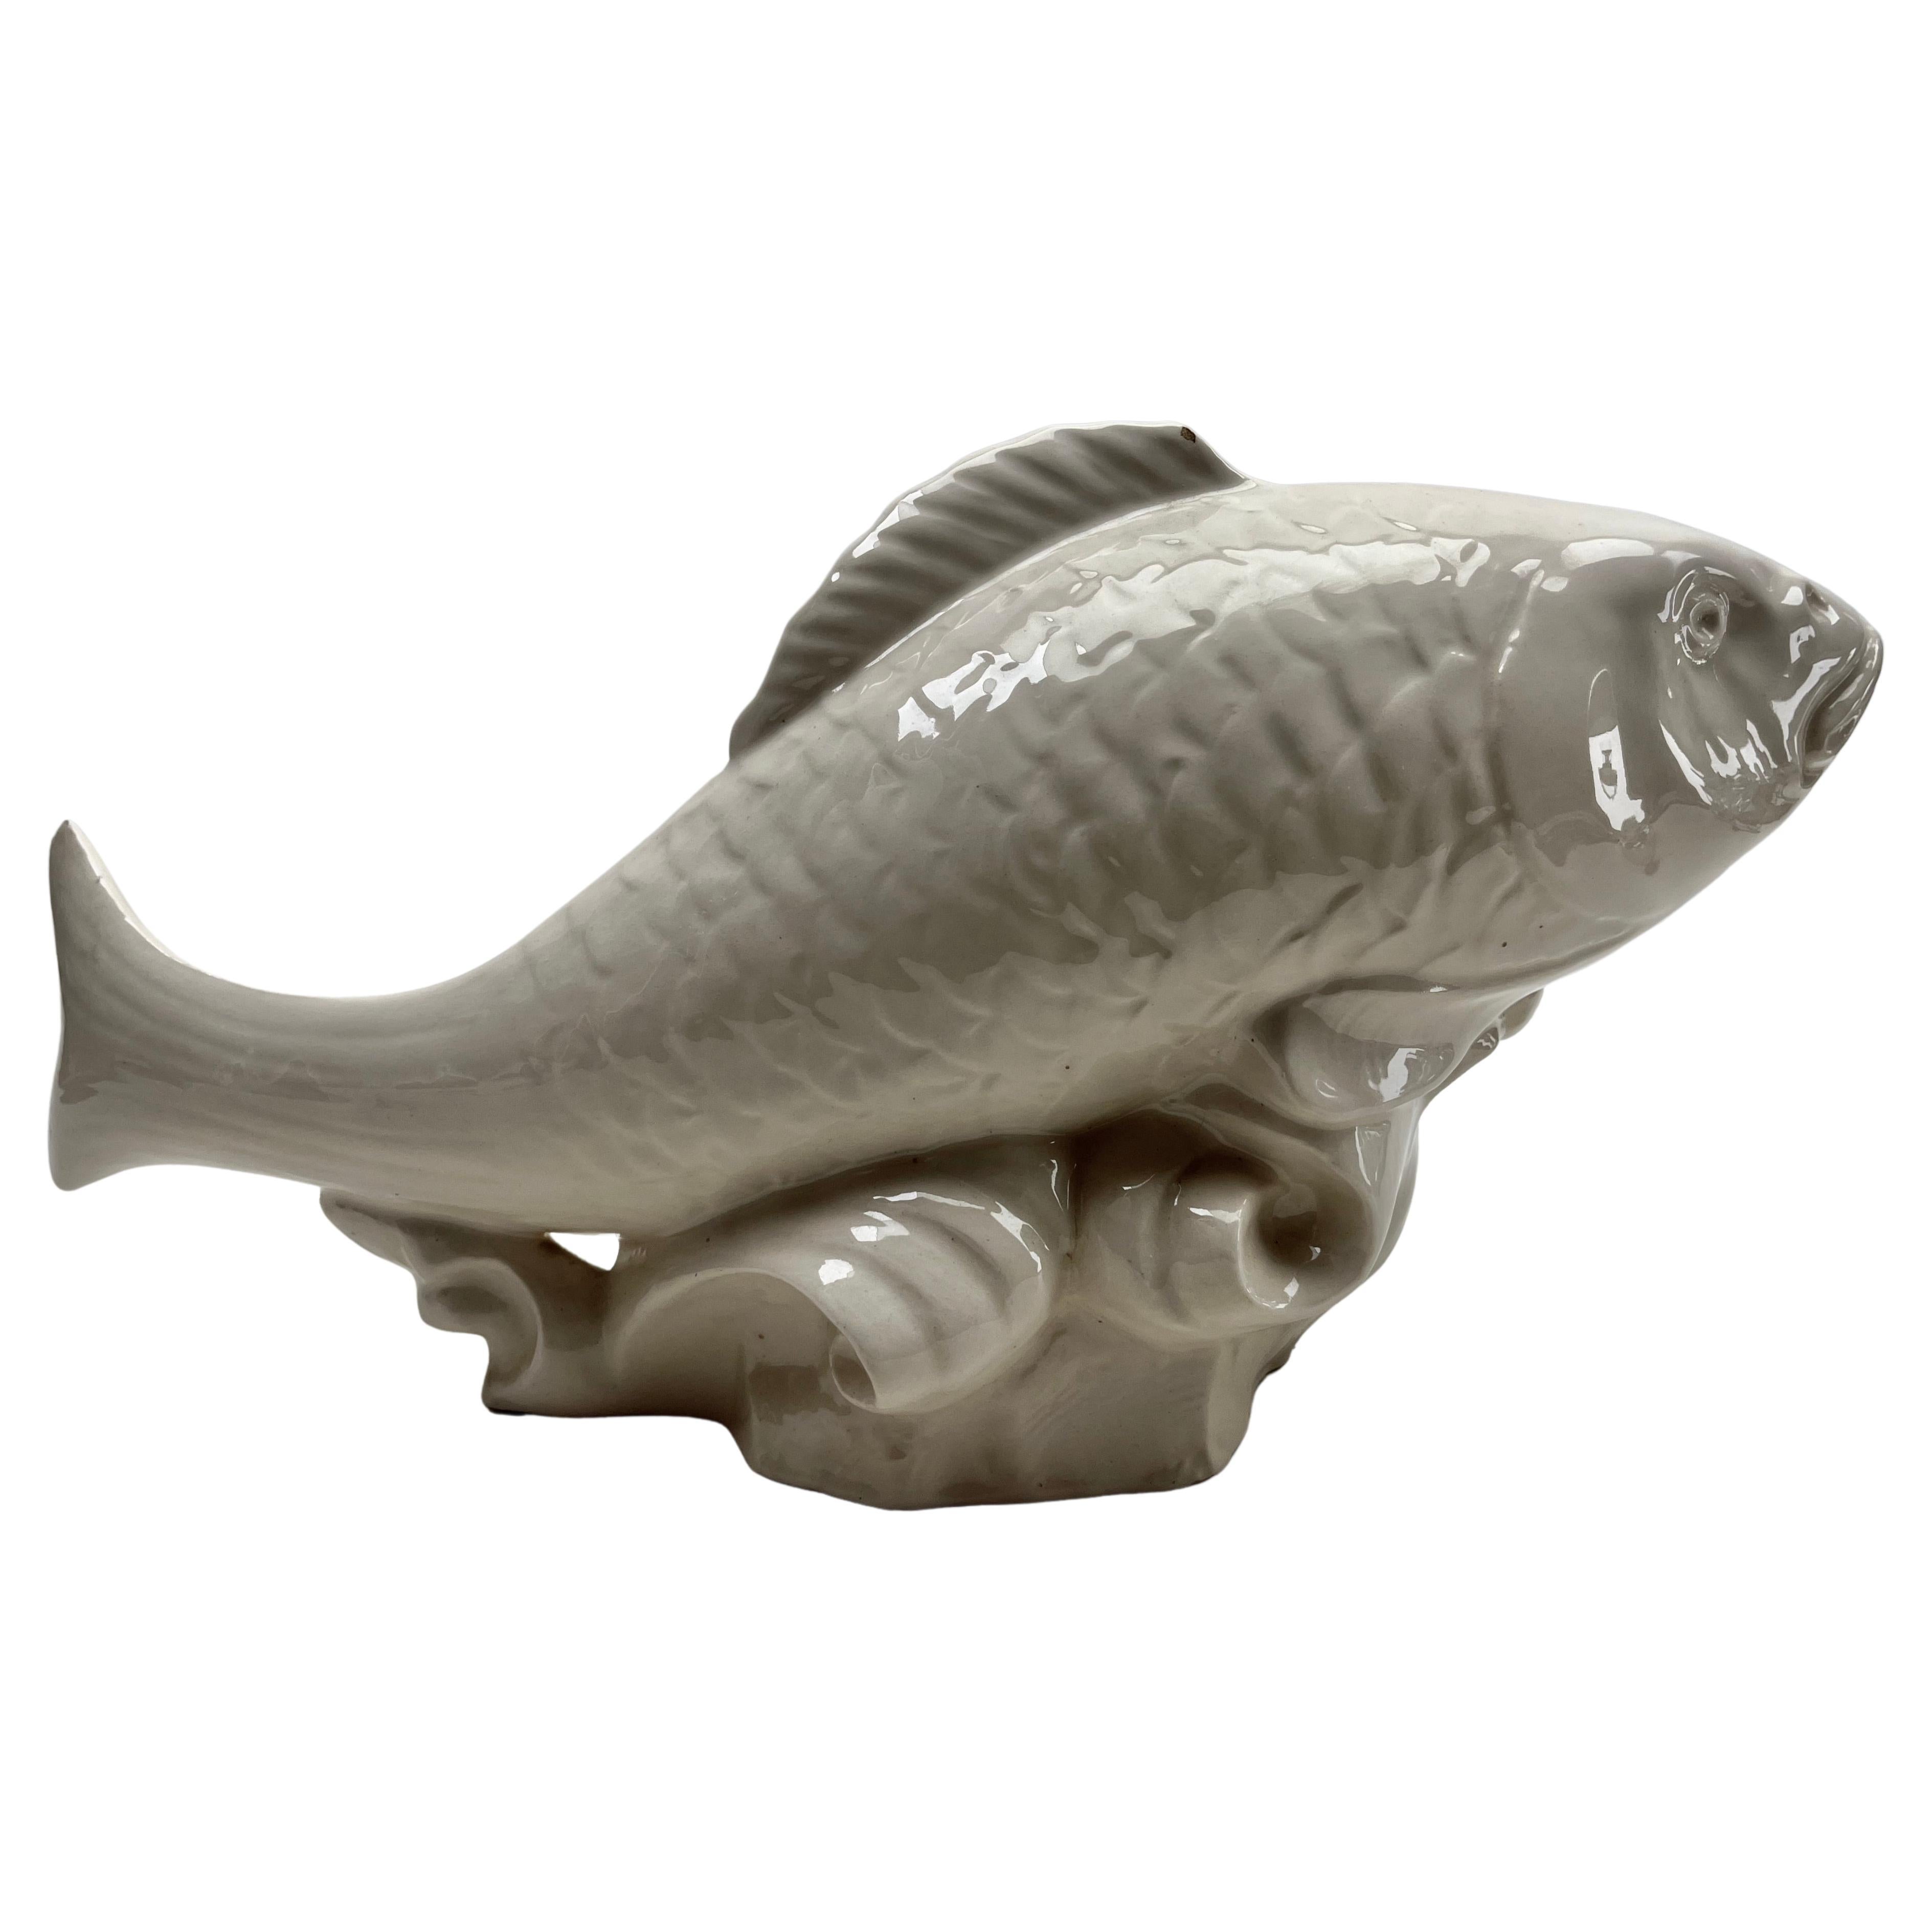 Cette élégante sculpture de poisson date de la fin des années 1950-1960 et a été fabriquée en Italie.
La pièce est en bon état et d'une grande beauté !

D'autres pièces Art Nouveau, Art déco et Vintage sont disponibles :

Avec mes meilleurs vœux